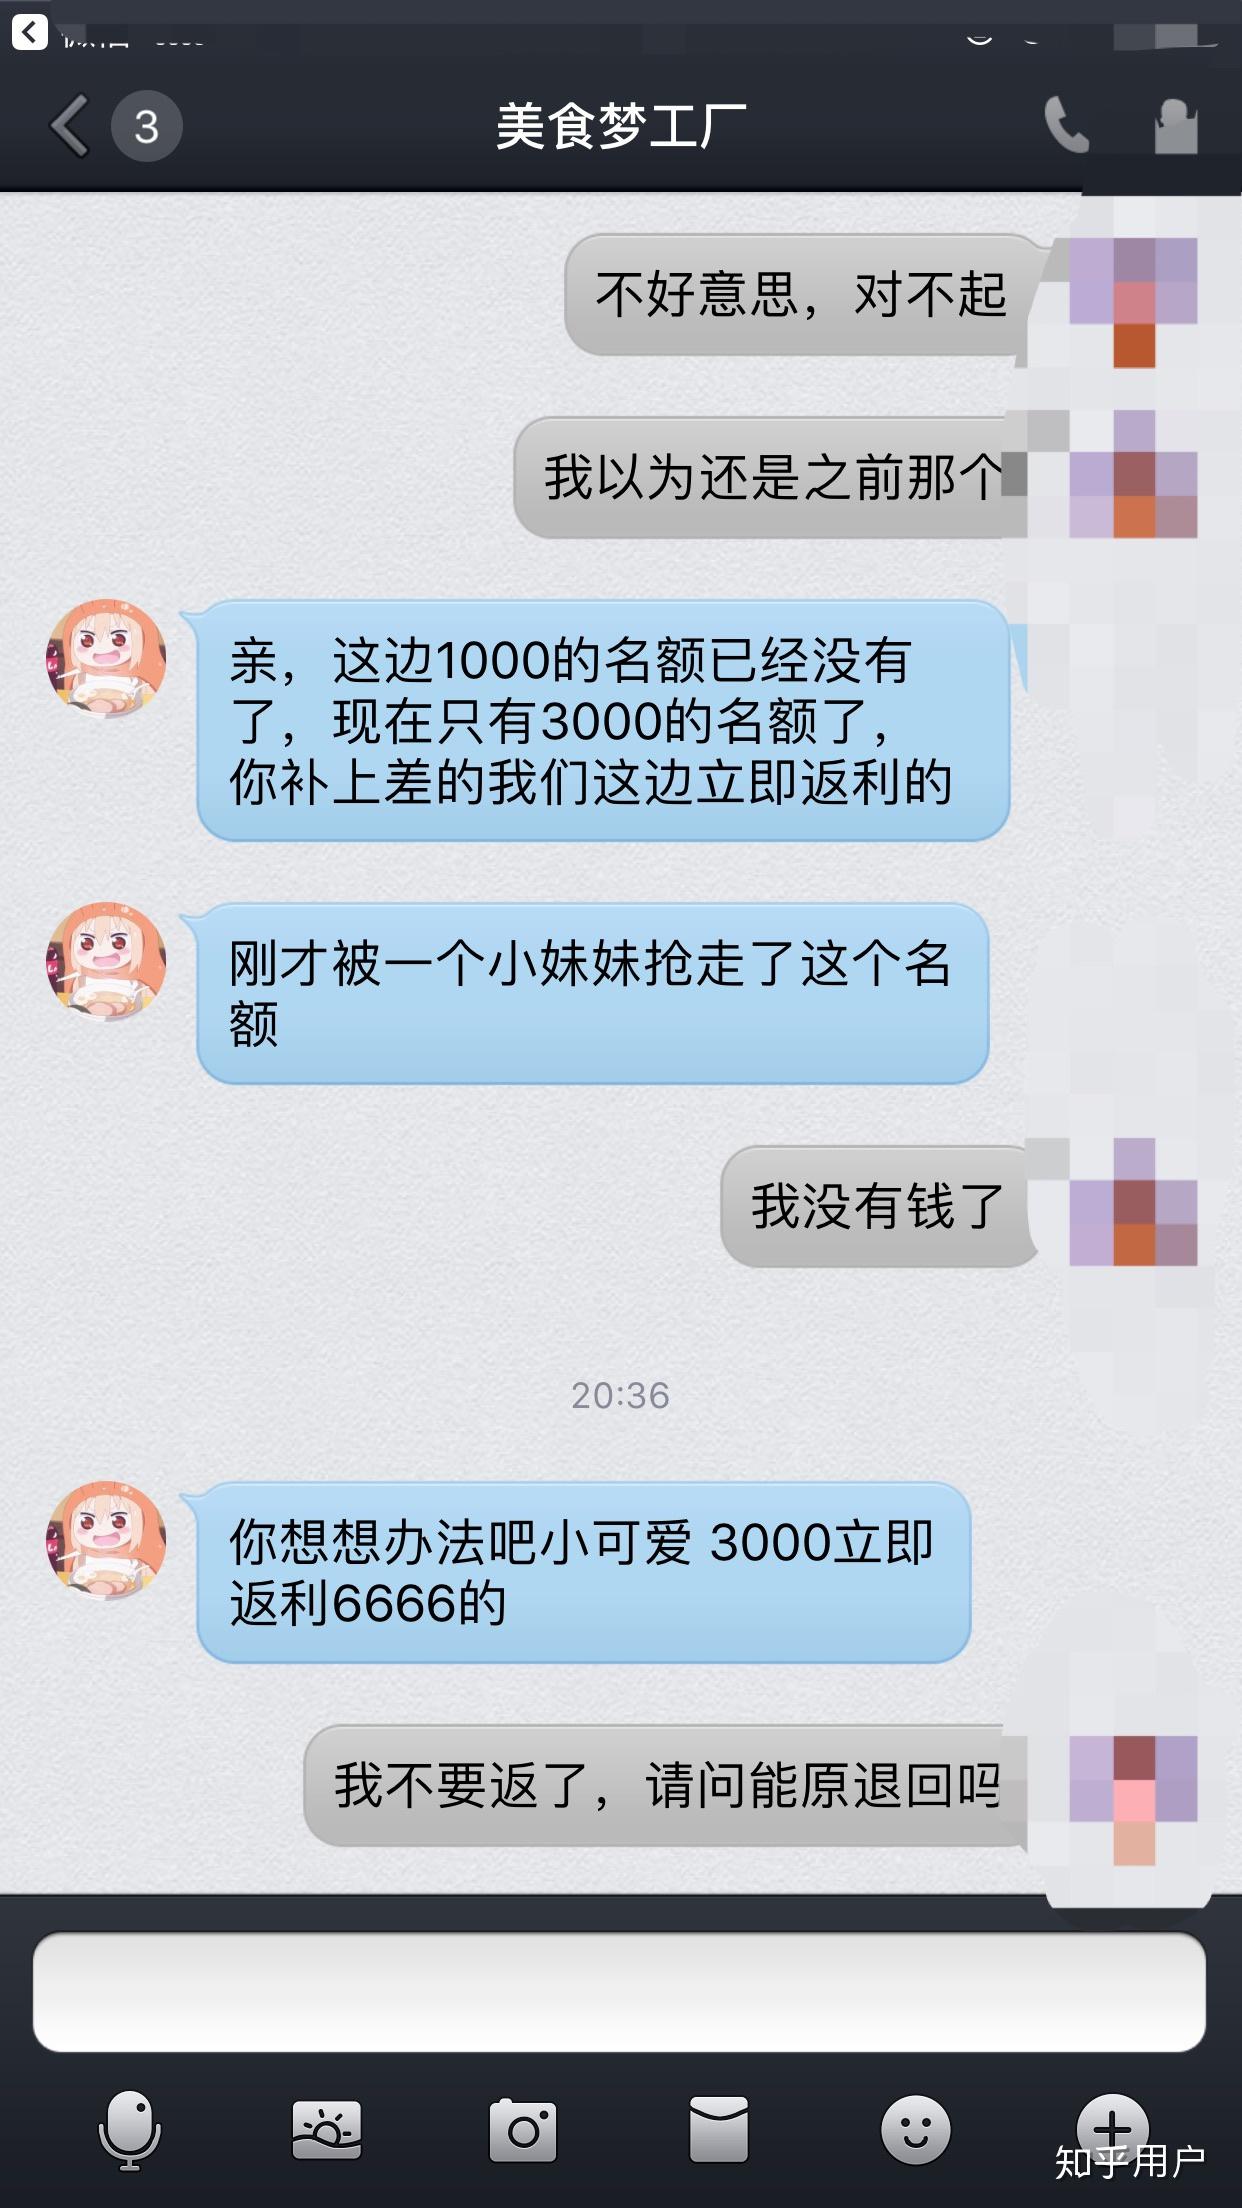 淘爱豆5G彩屏 – 淘爱豆5G视频彩铃品宣引领者